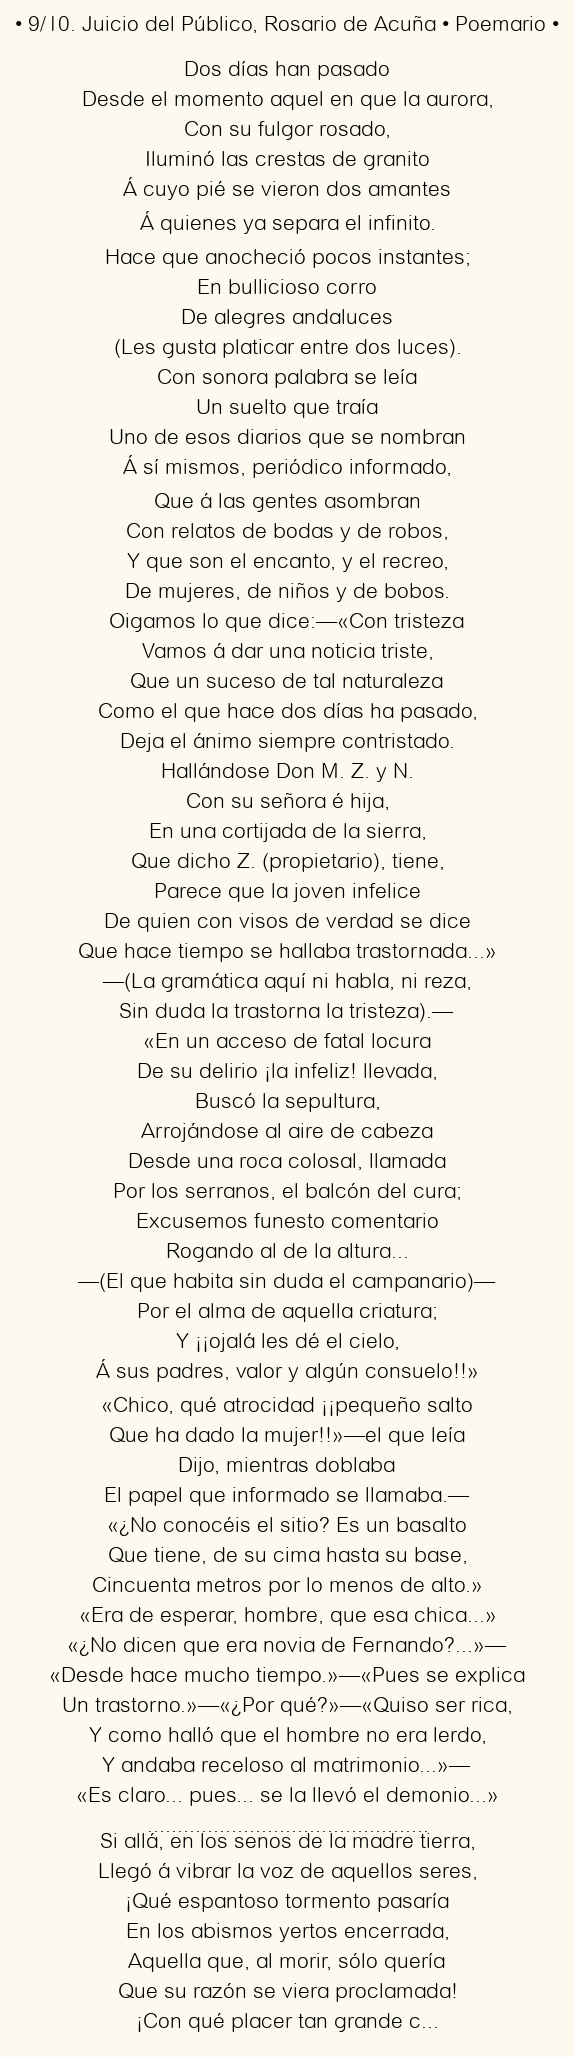 Imagen con el poema 9/10. Juicio del Público, por Rosario de Acuña